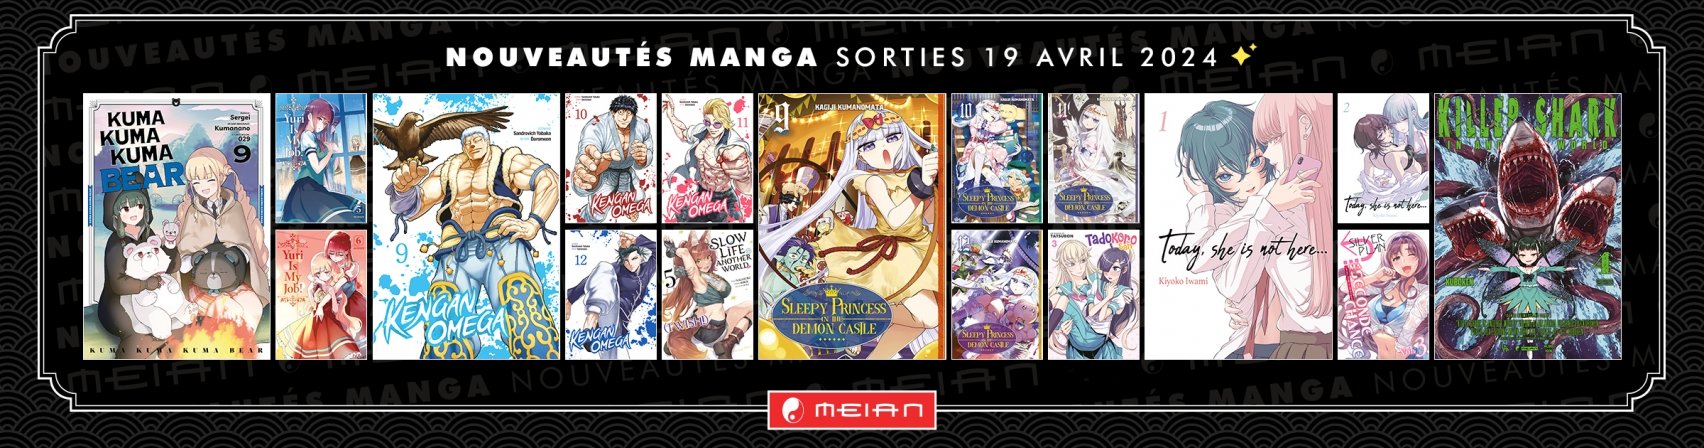 17 nouveaux mangas MEIAN disponibles